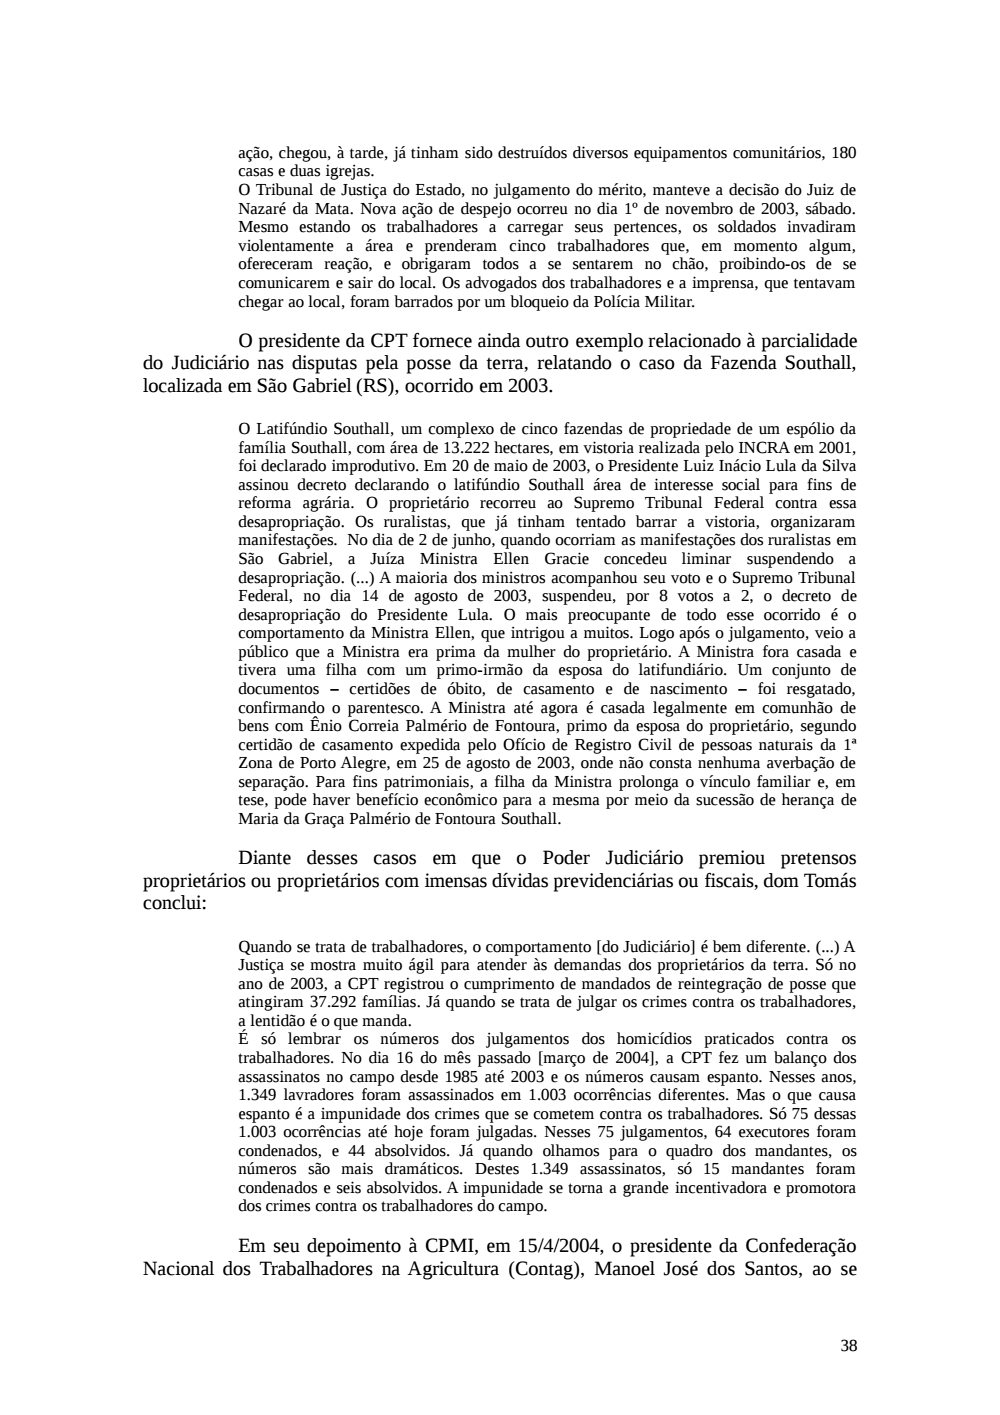 Page 38 from Relatório final da comissão